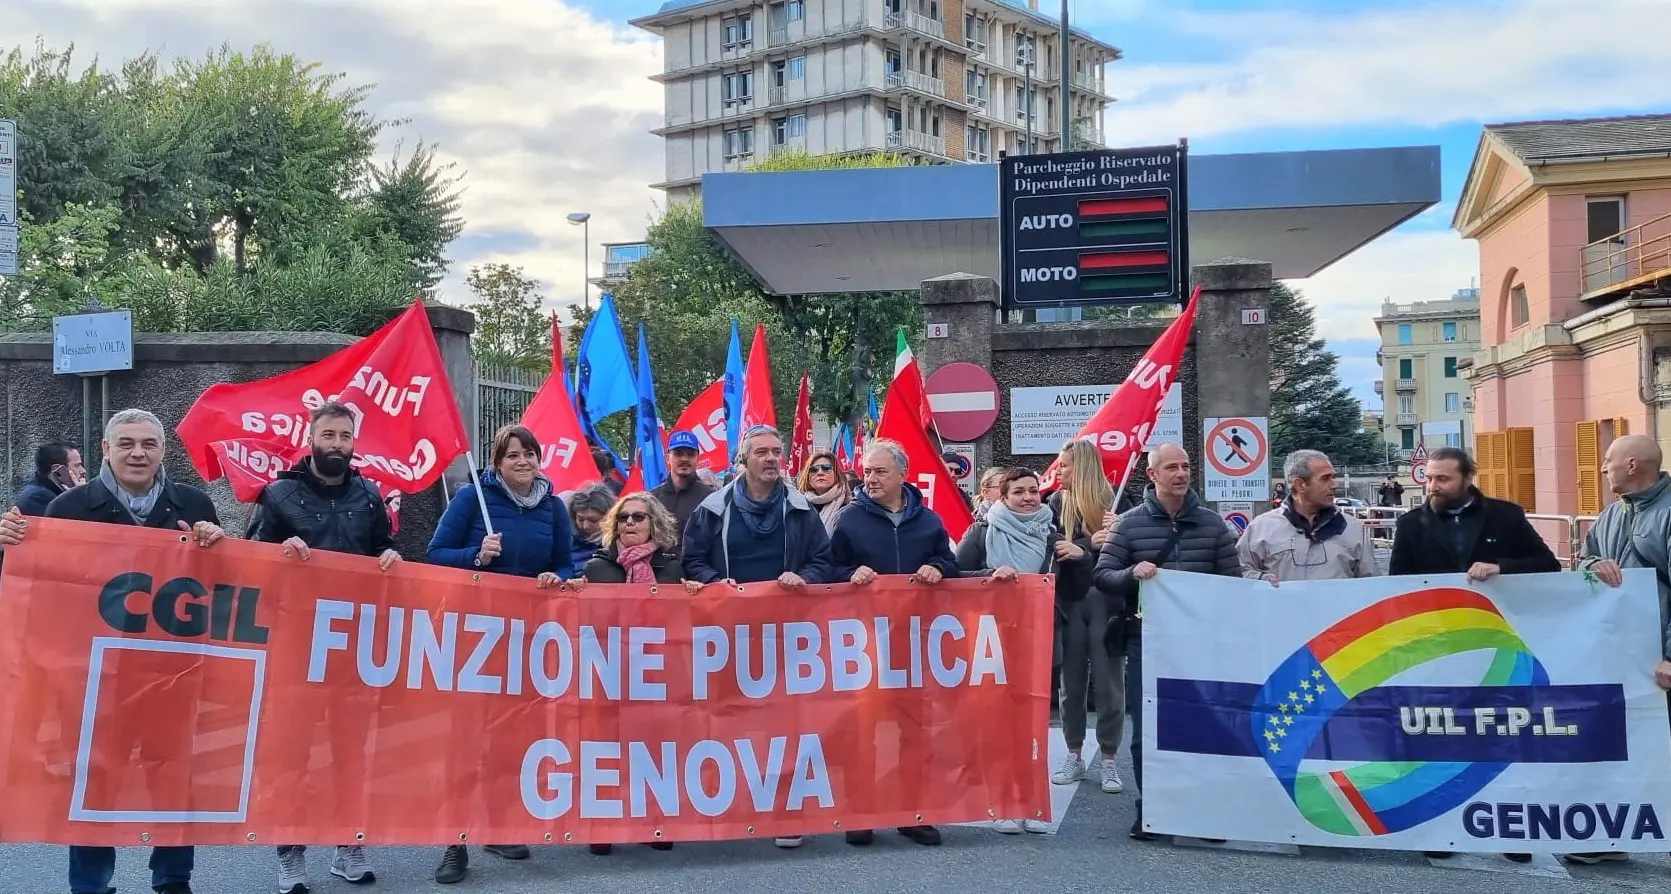 Ospedale Galliera, sciopero e corteo a Genova